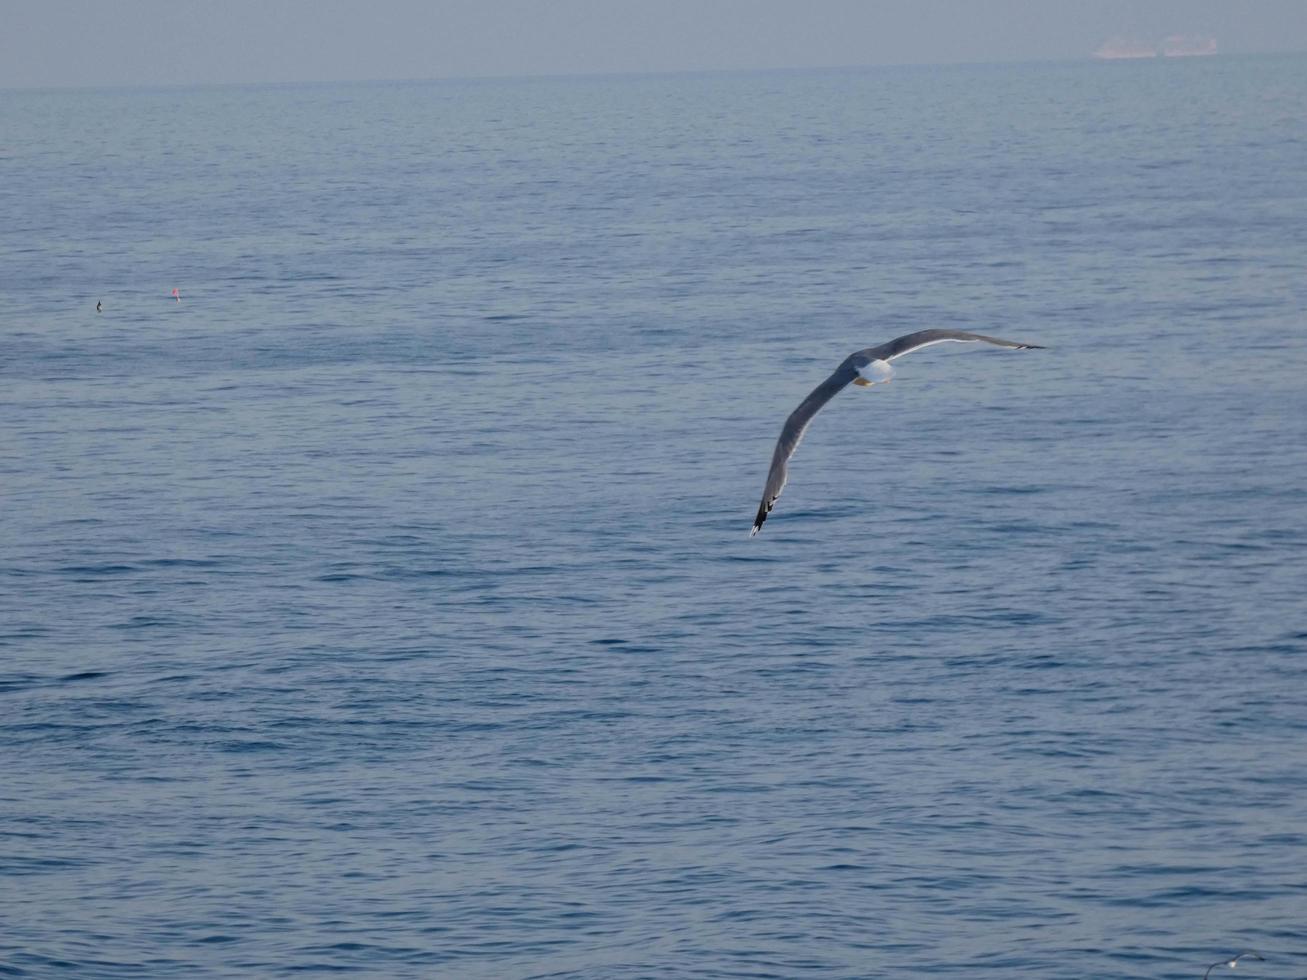 gaivotas de plumagem leve típicas da costa brava catalã, mediterrâneo, espanha. foto